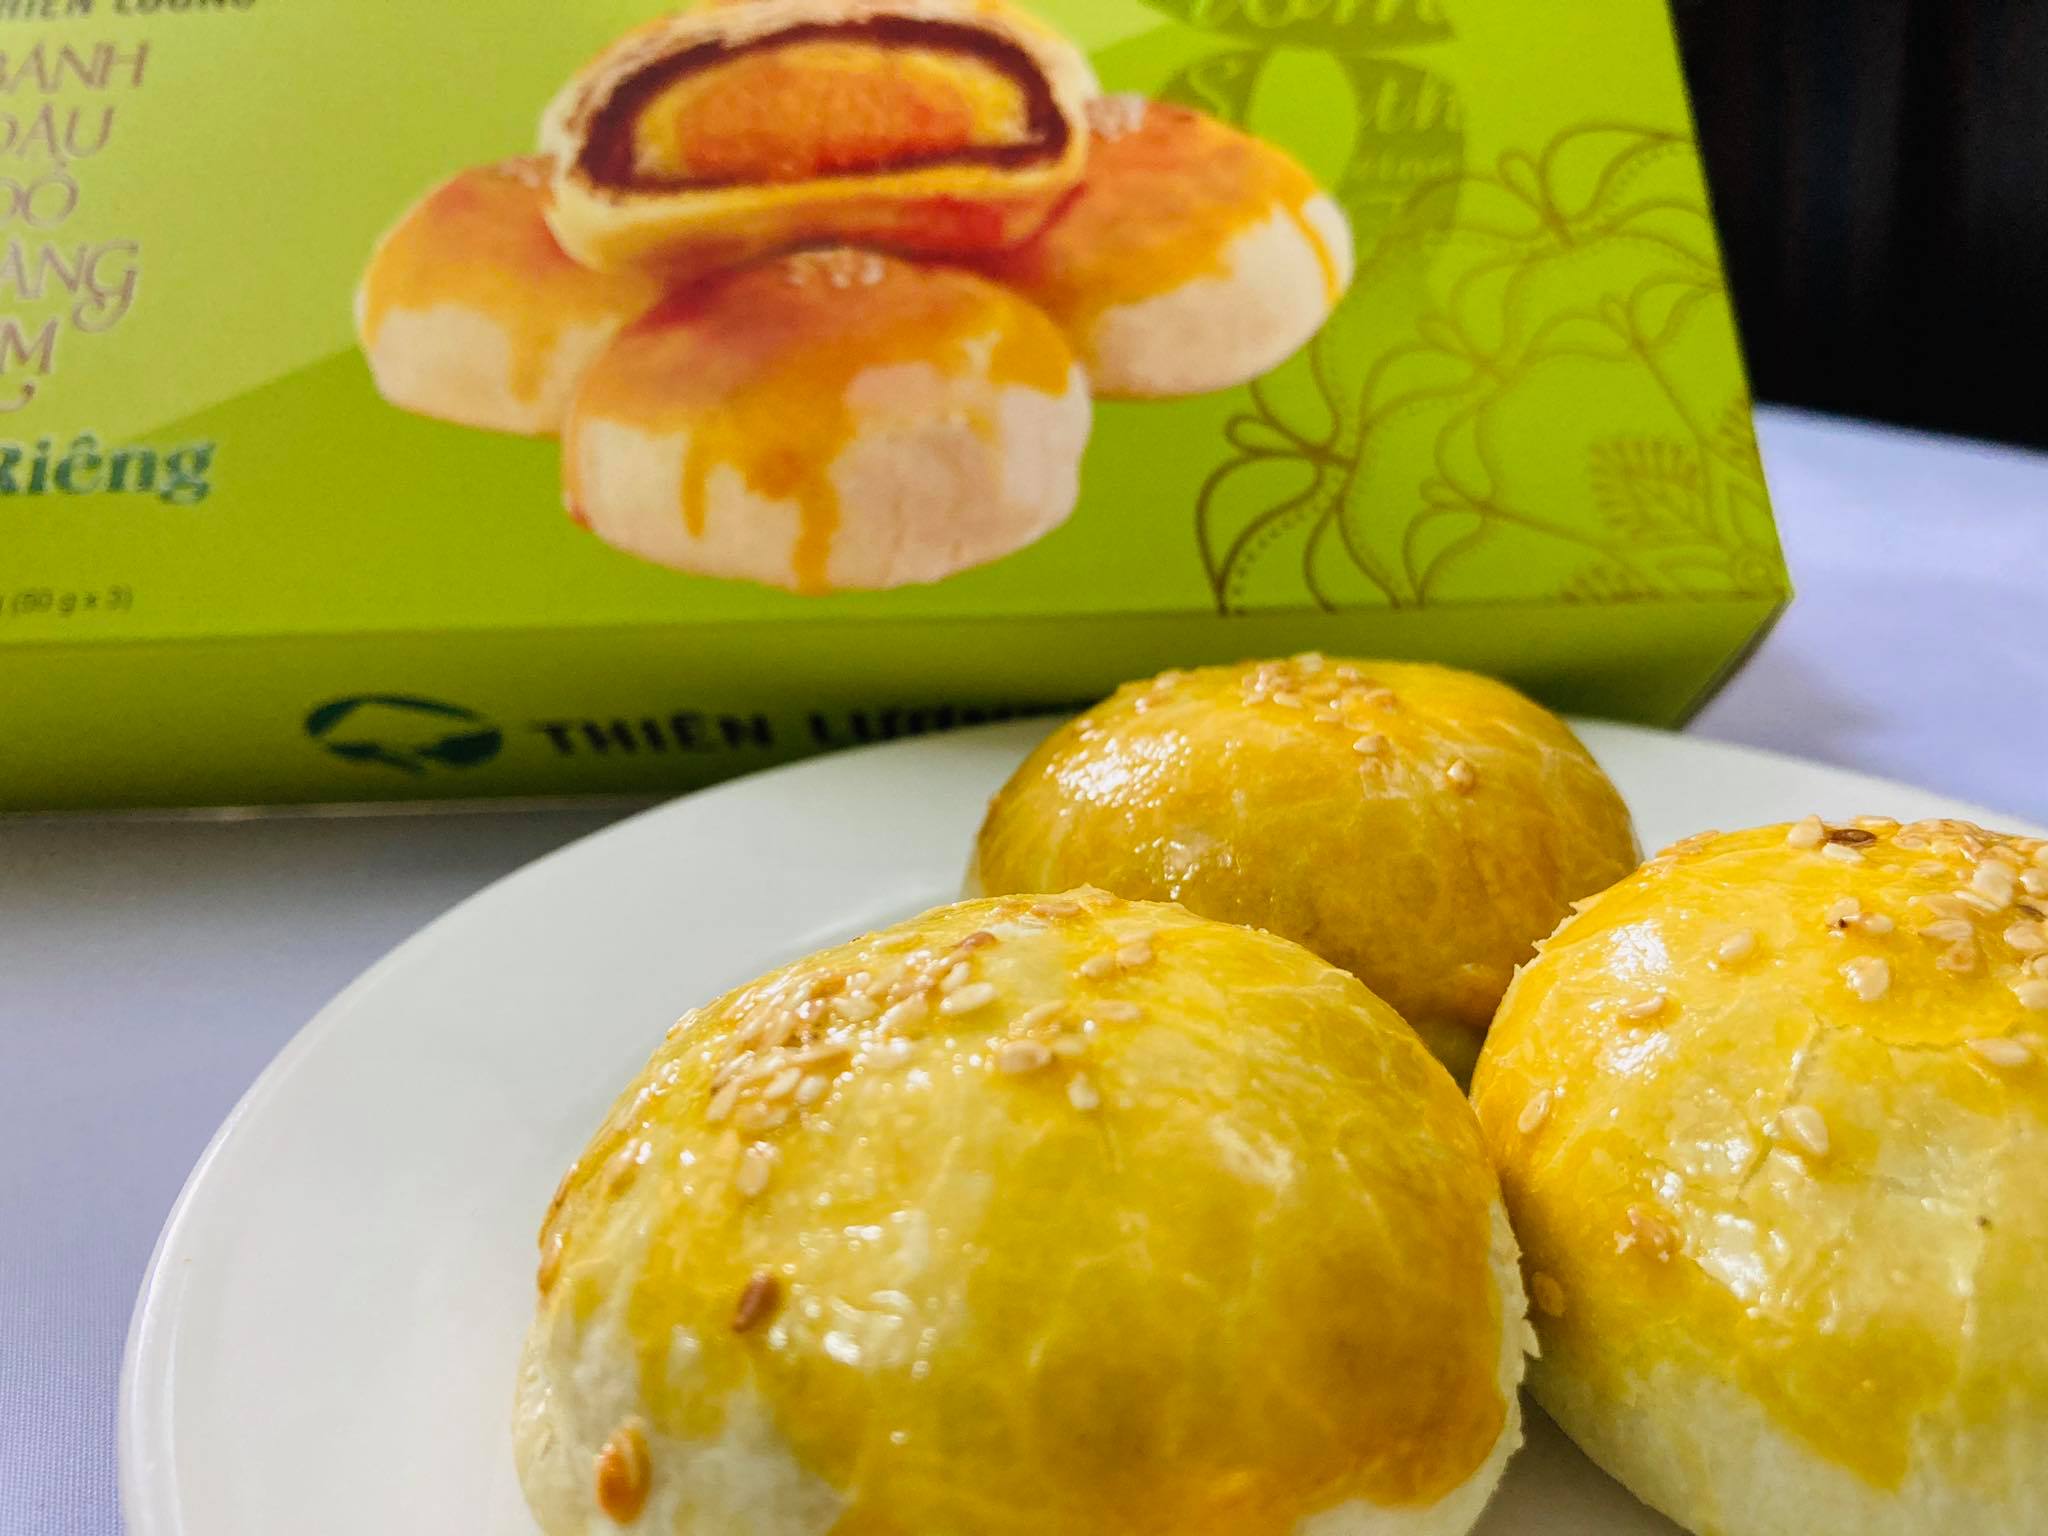 Bánh Đậu Đỏ Hoàng Kim Sầu Riêng (50 g x 3)